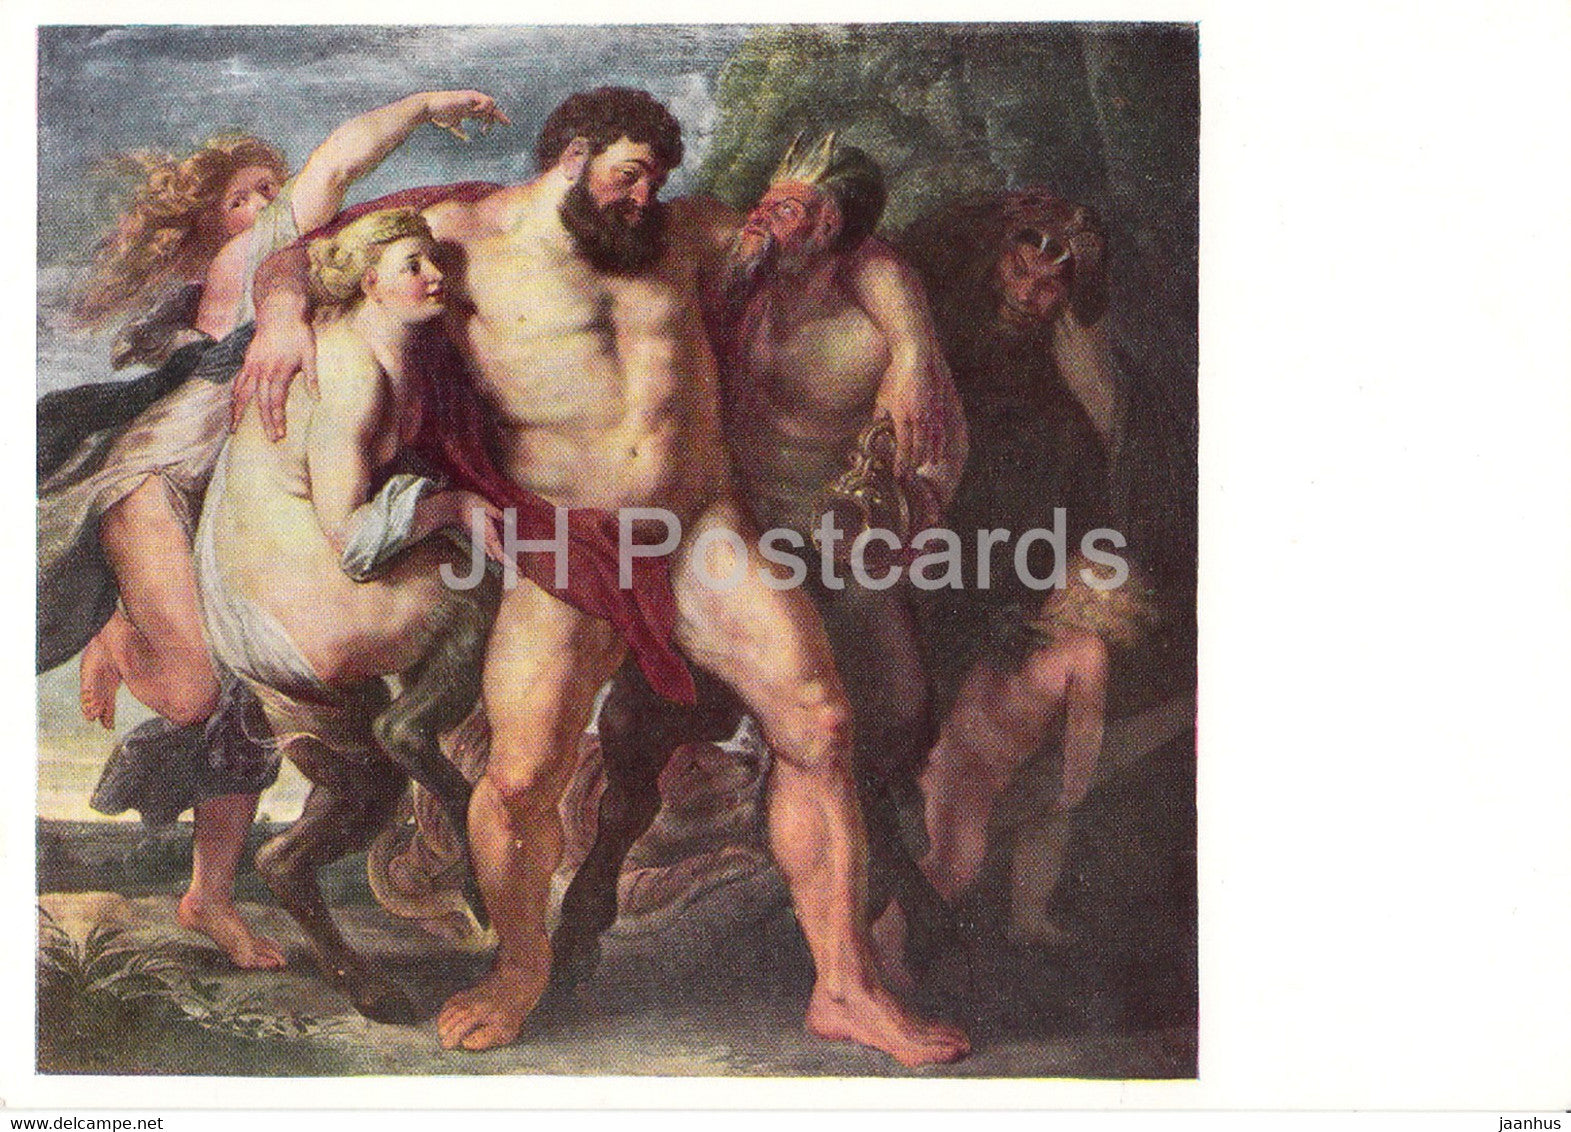 painting by Peter Paul Rubens - Der trunkene Herkules - Drunk Hercules - Flemish art - Germany DDR - unused - JH Postcards